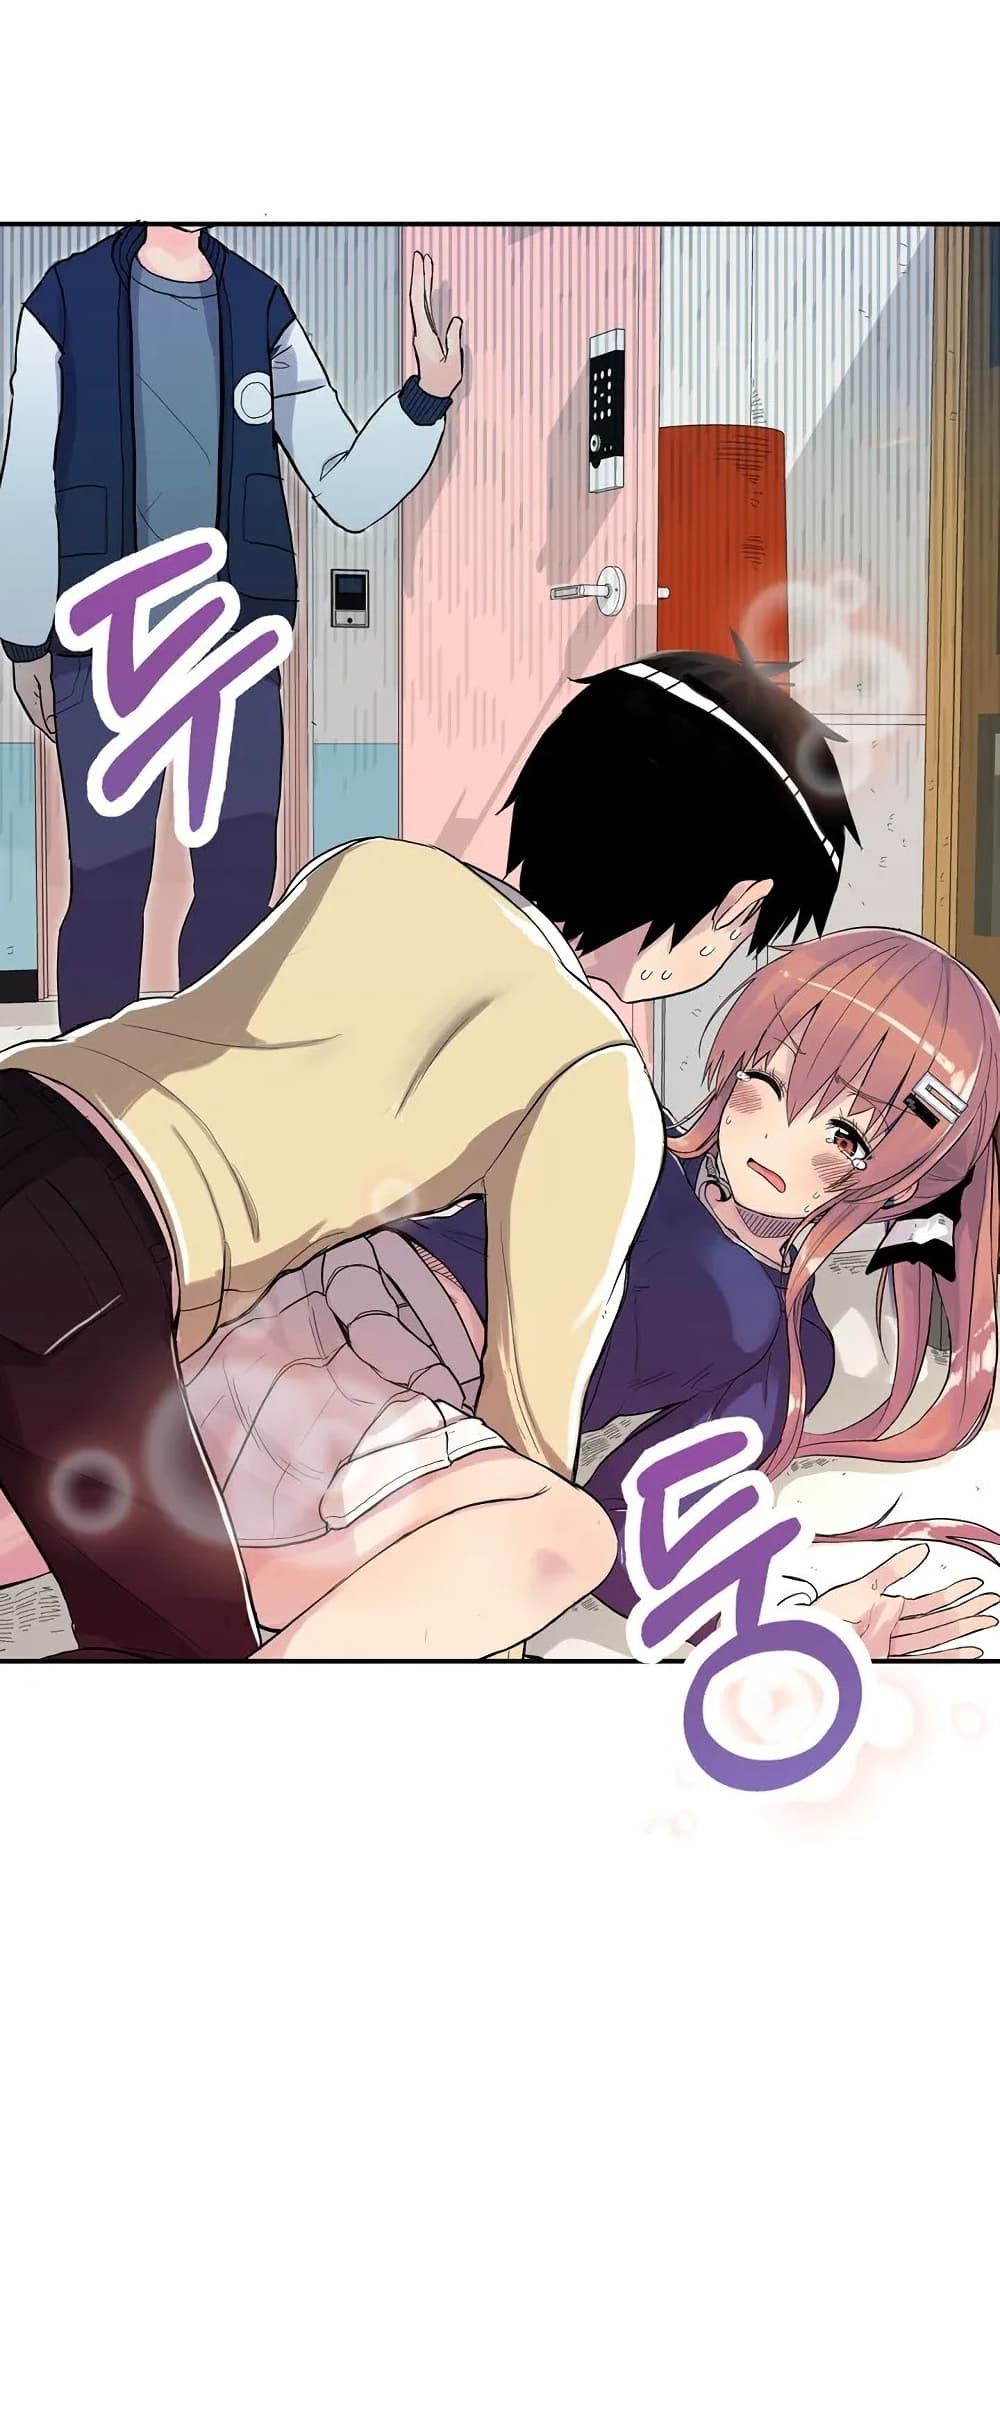 Erotic Manga Club ชมรมการ์ตูนอีโรติก 1-1